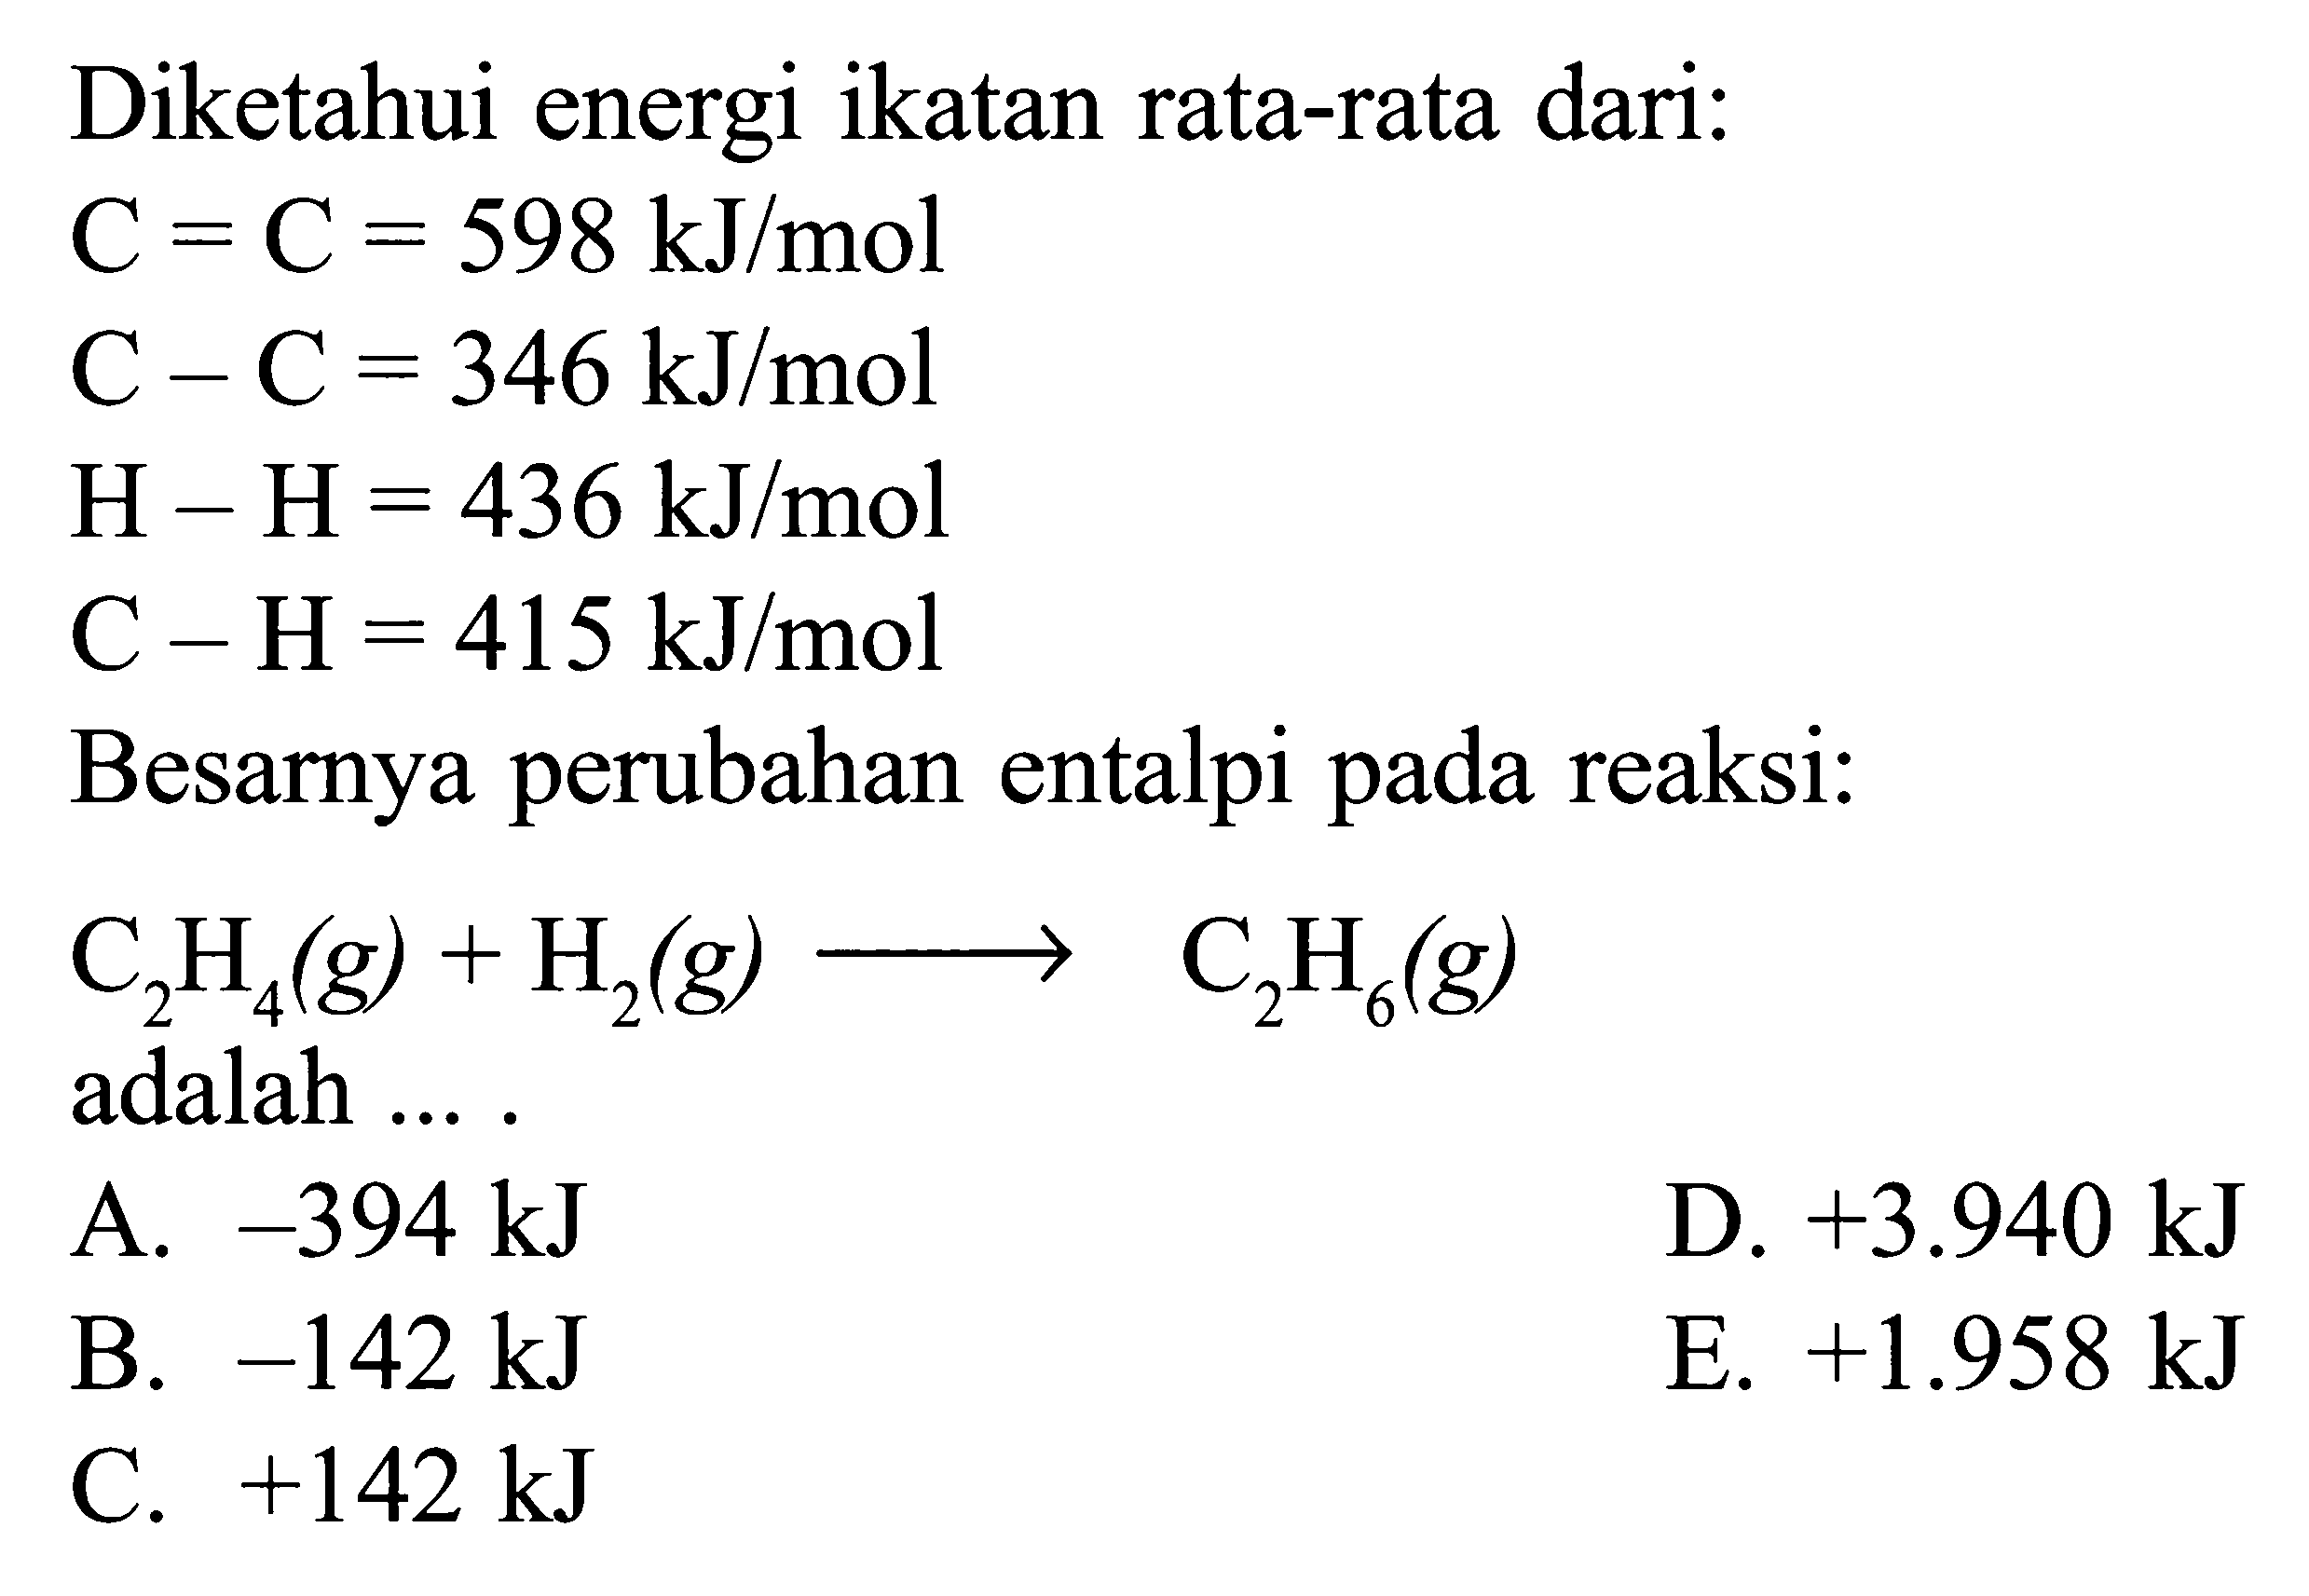 Diketahui energi ikatan rata-rata dari: C = C = 598 kJ/mol C - C = 346 kJ/mol H - H = 436 kJ/mol C - H = 415 kJ/mol Besarnya perubahan entalpi pada reaksi: C2H4(g) + H2(g) -> C2H6(g) adalah ....